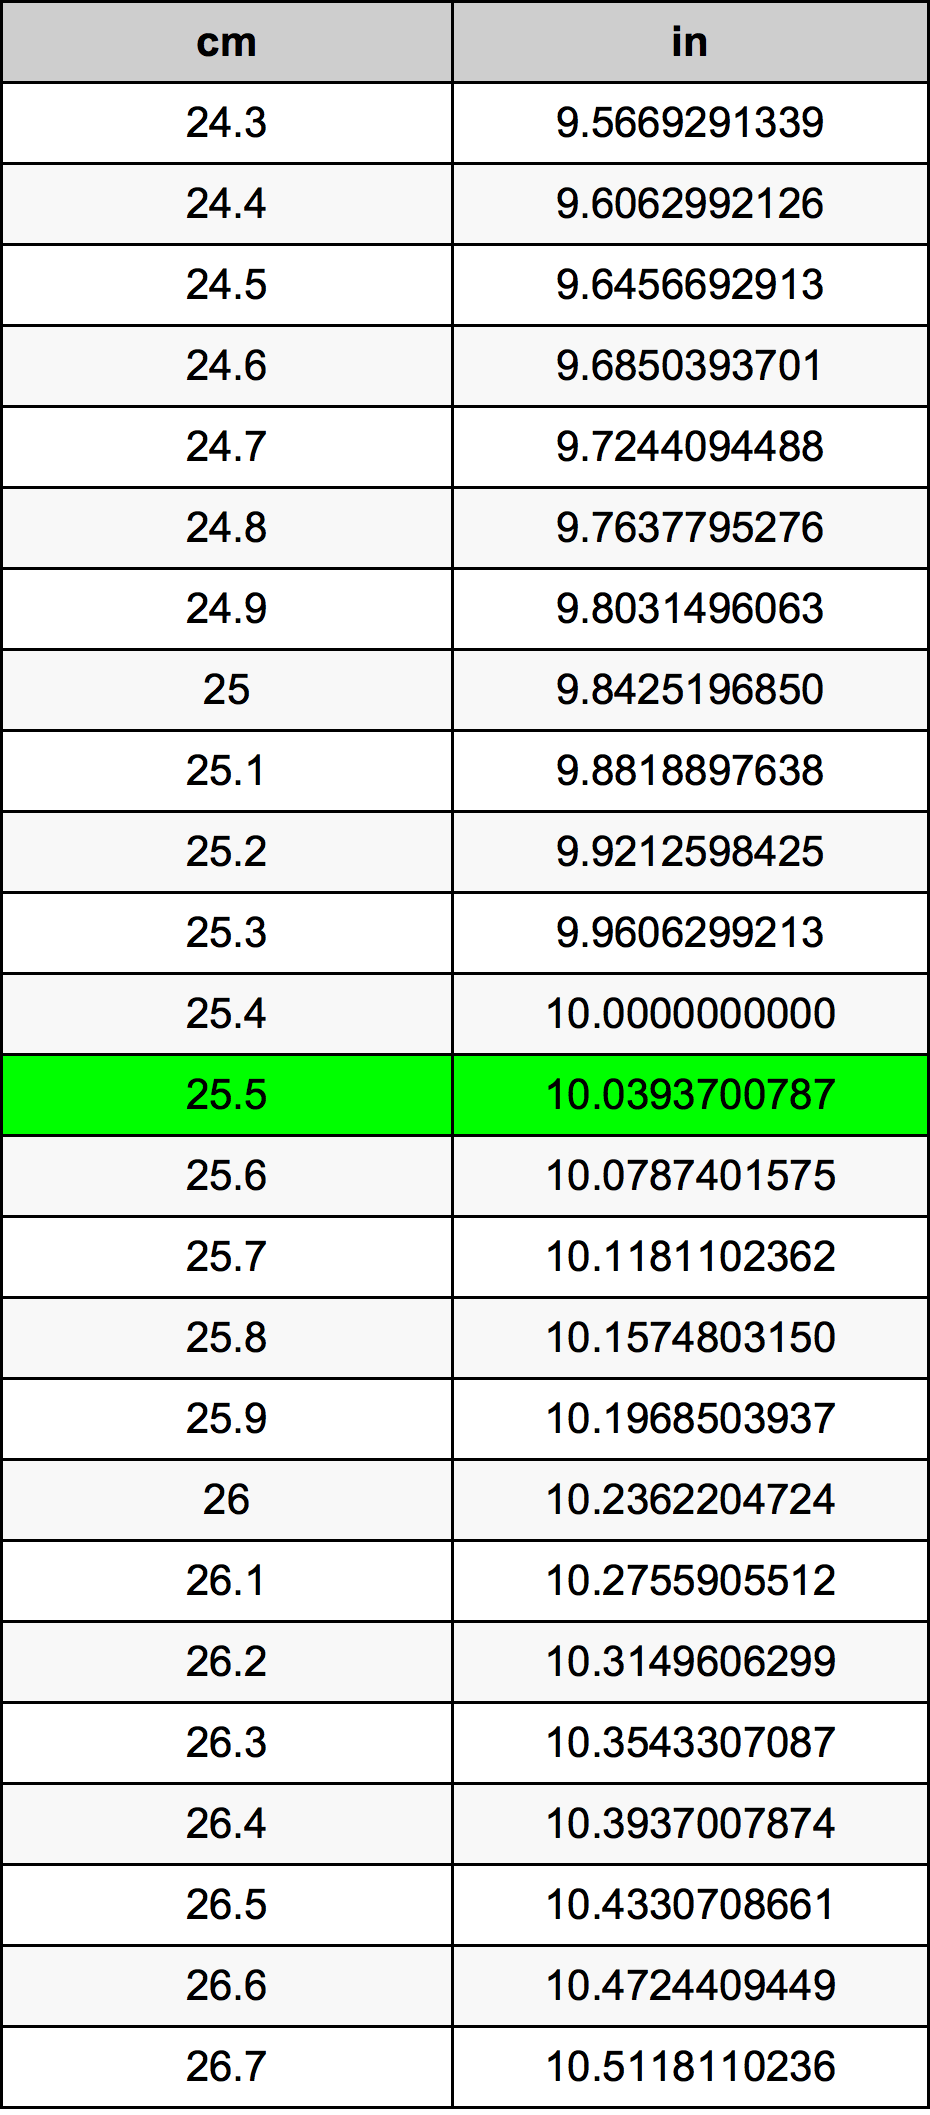 25.5 Centiméter átszámítási táblázat